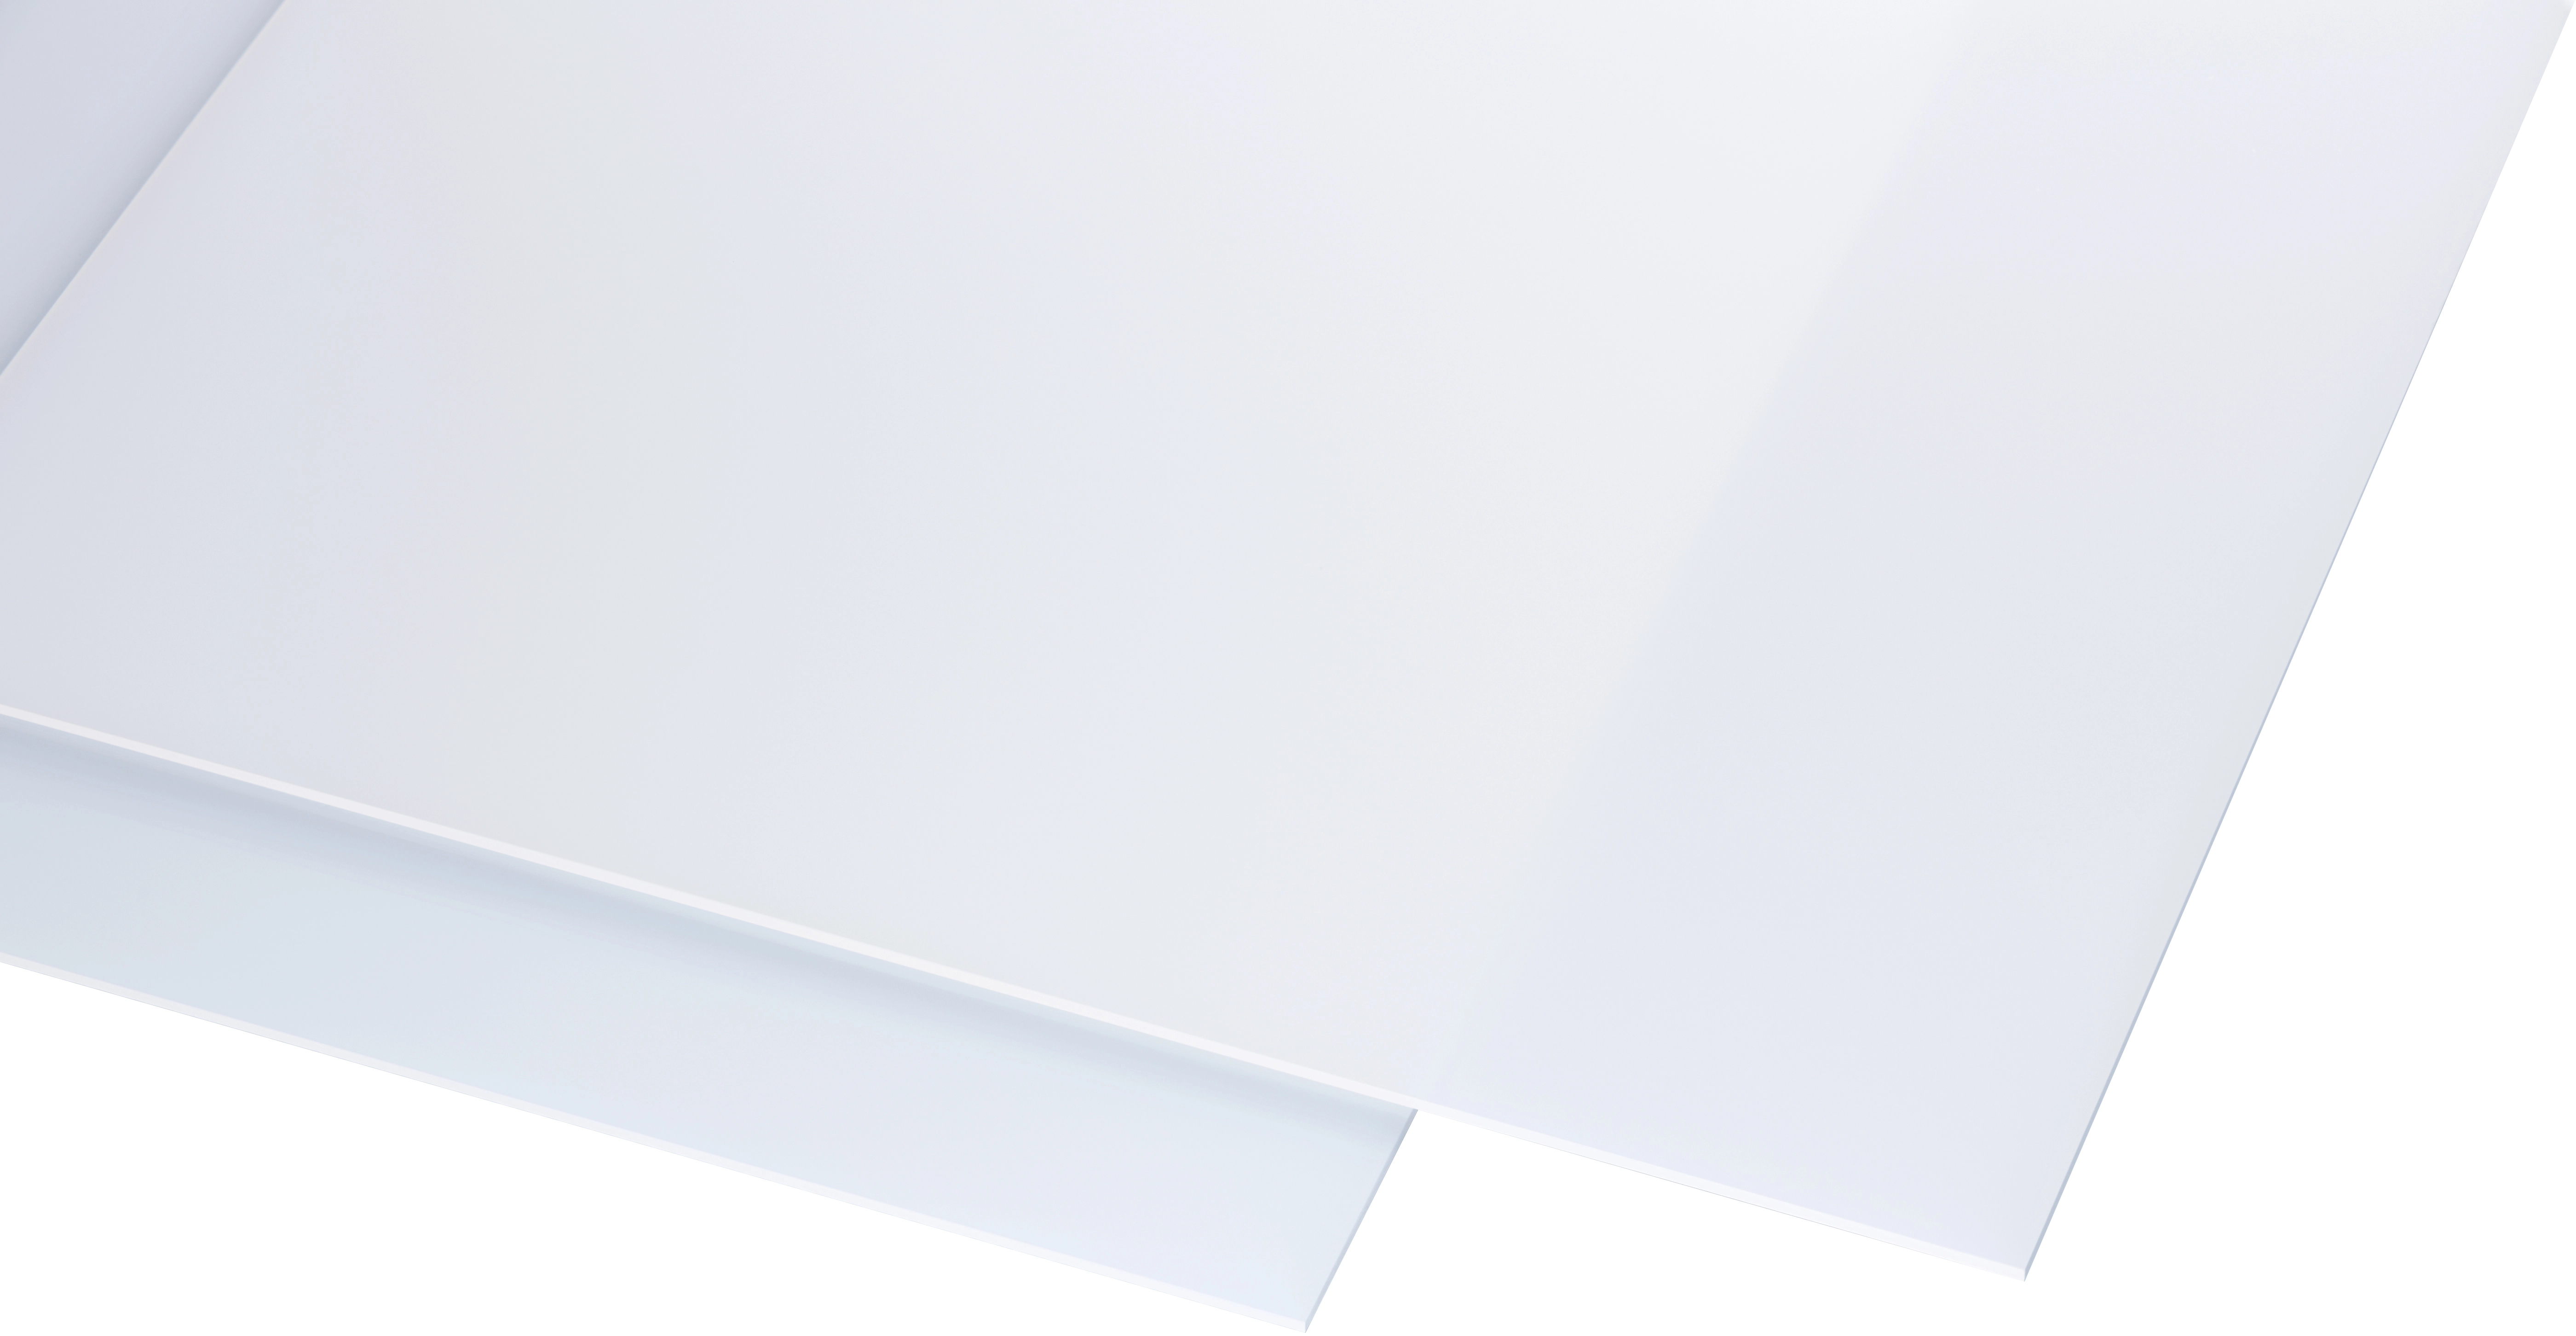 Kunststoffplatte ABS 2mm Weiß 1000 x 500 mm (100 x 50 cm